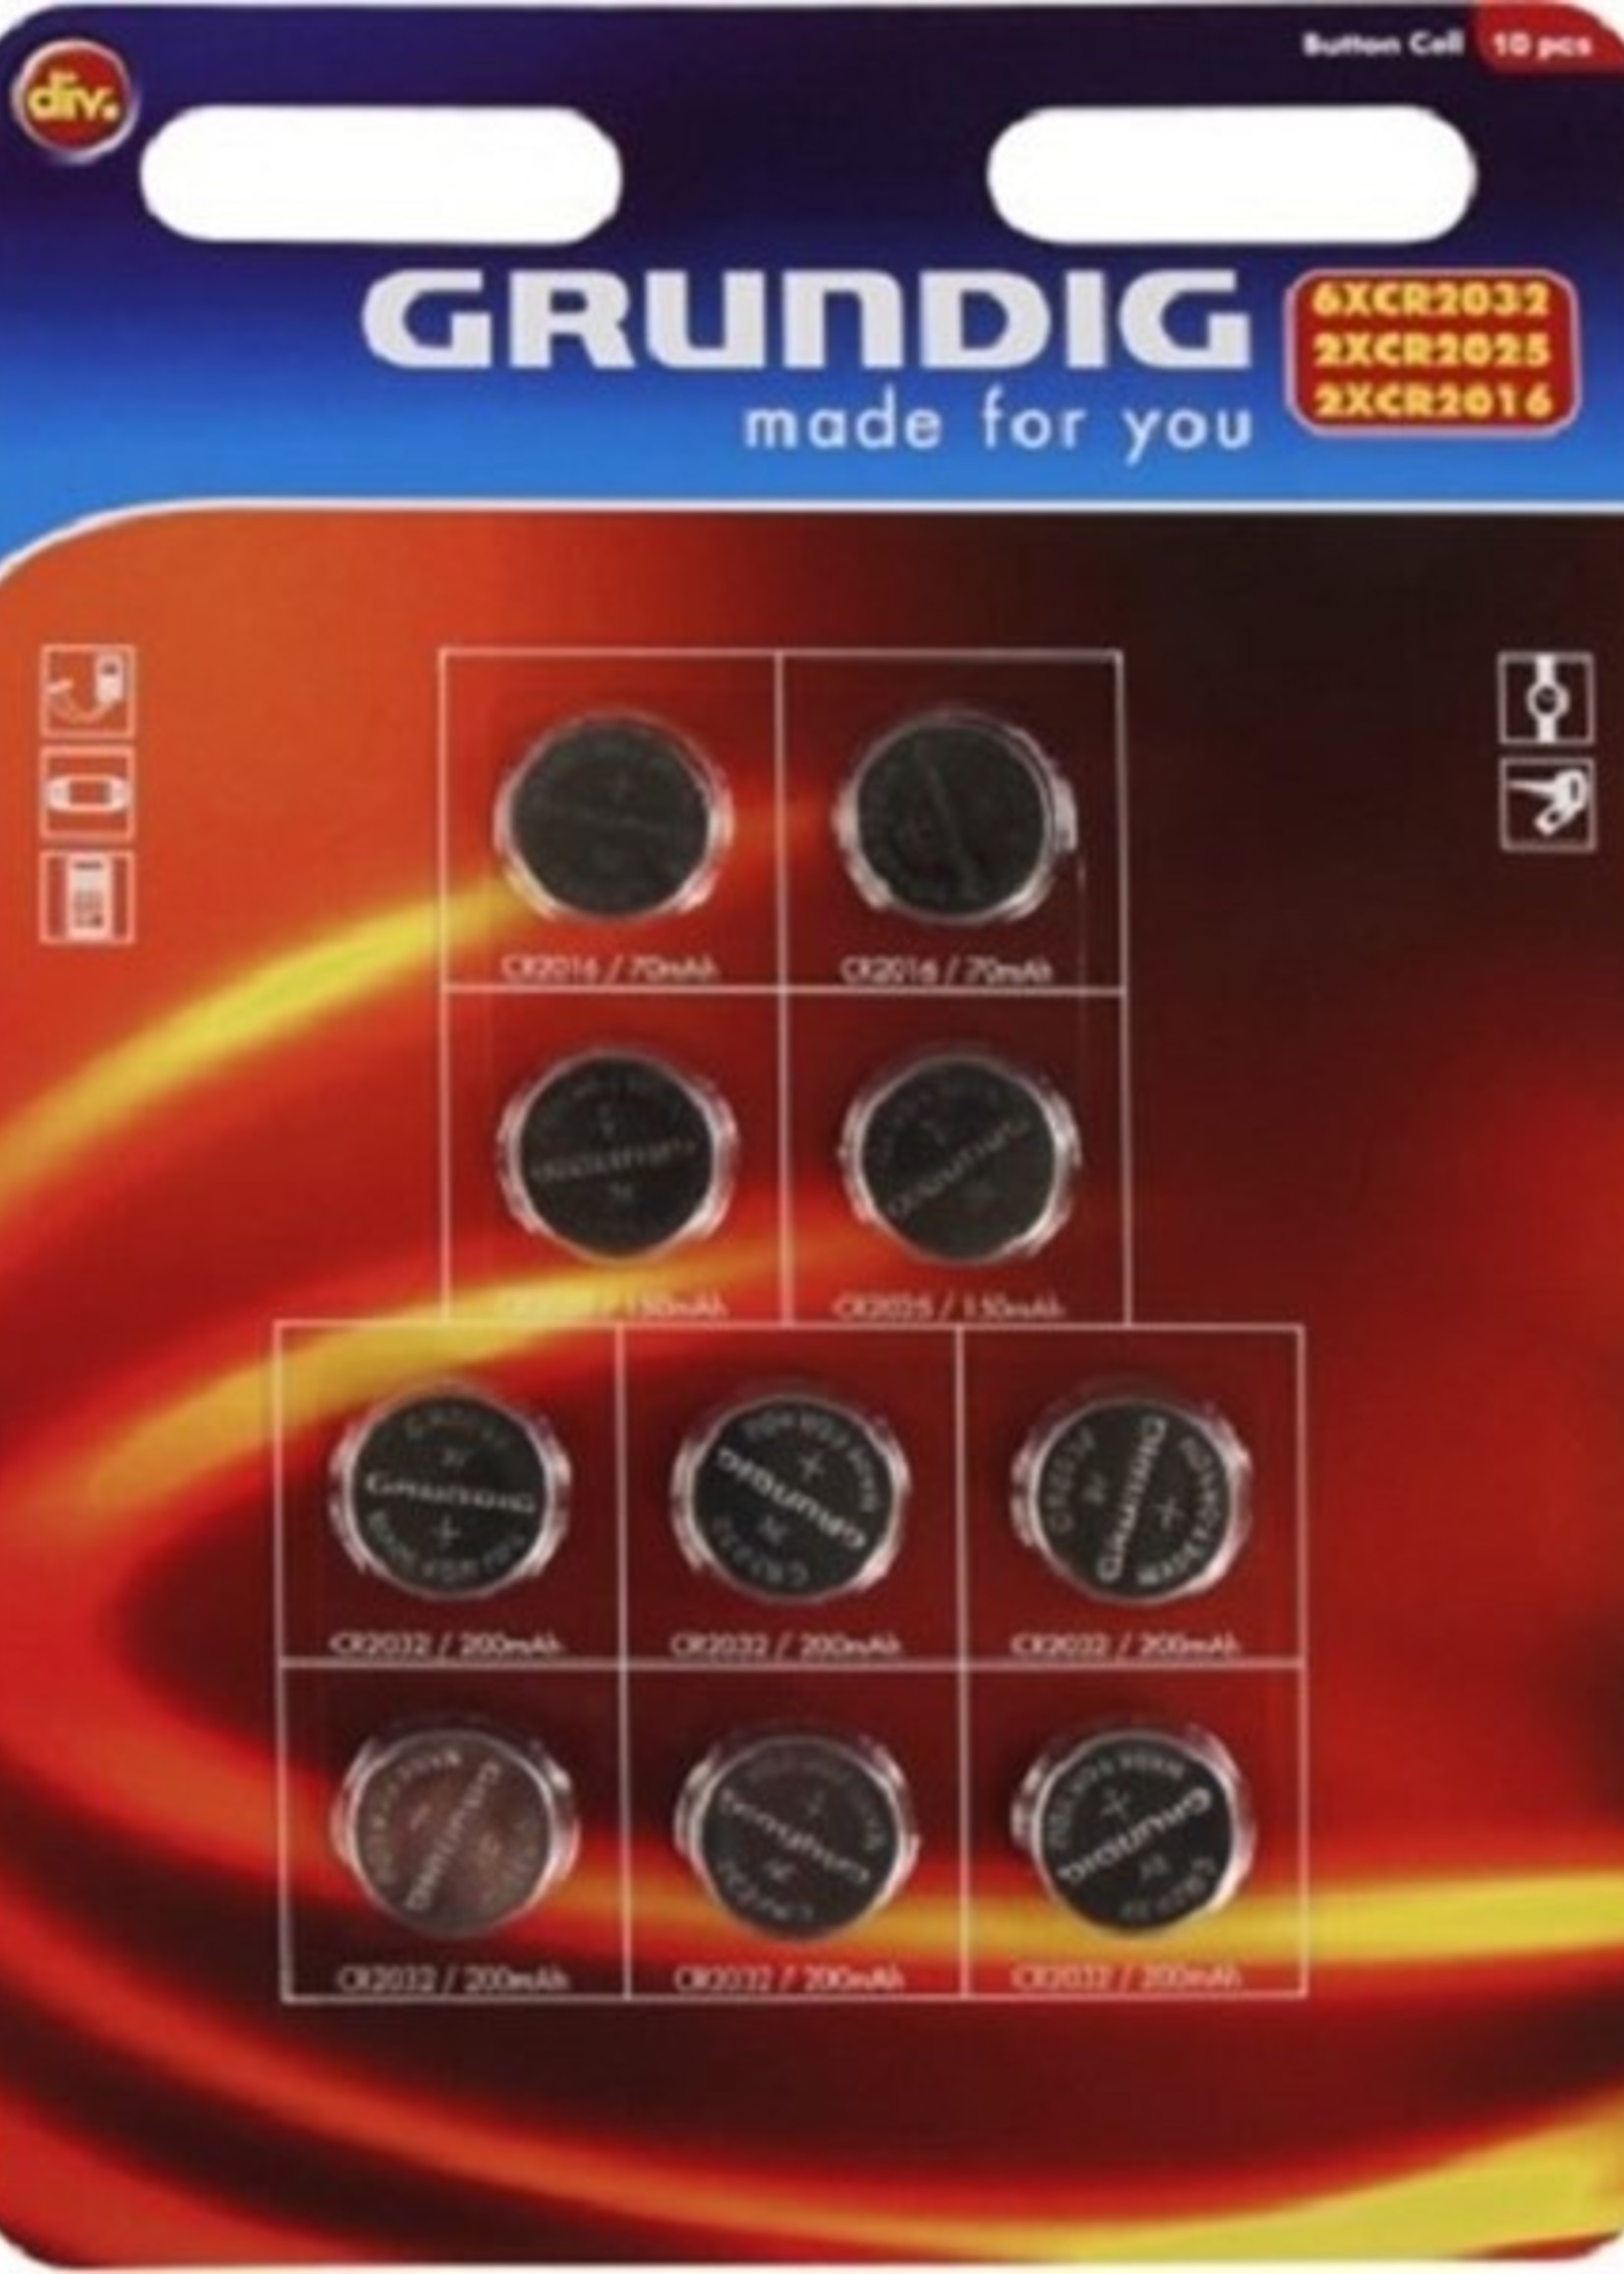 Grundig Knoopcelbatterijen 10 stuks op kaart (6xCR2032,2xCR2025,2xCR2016)